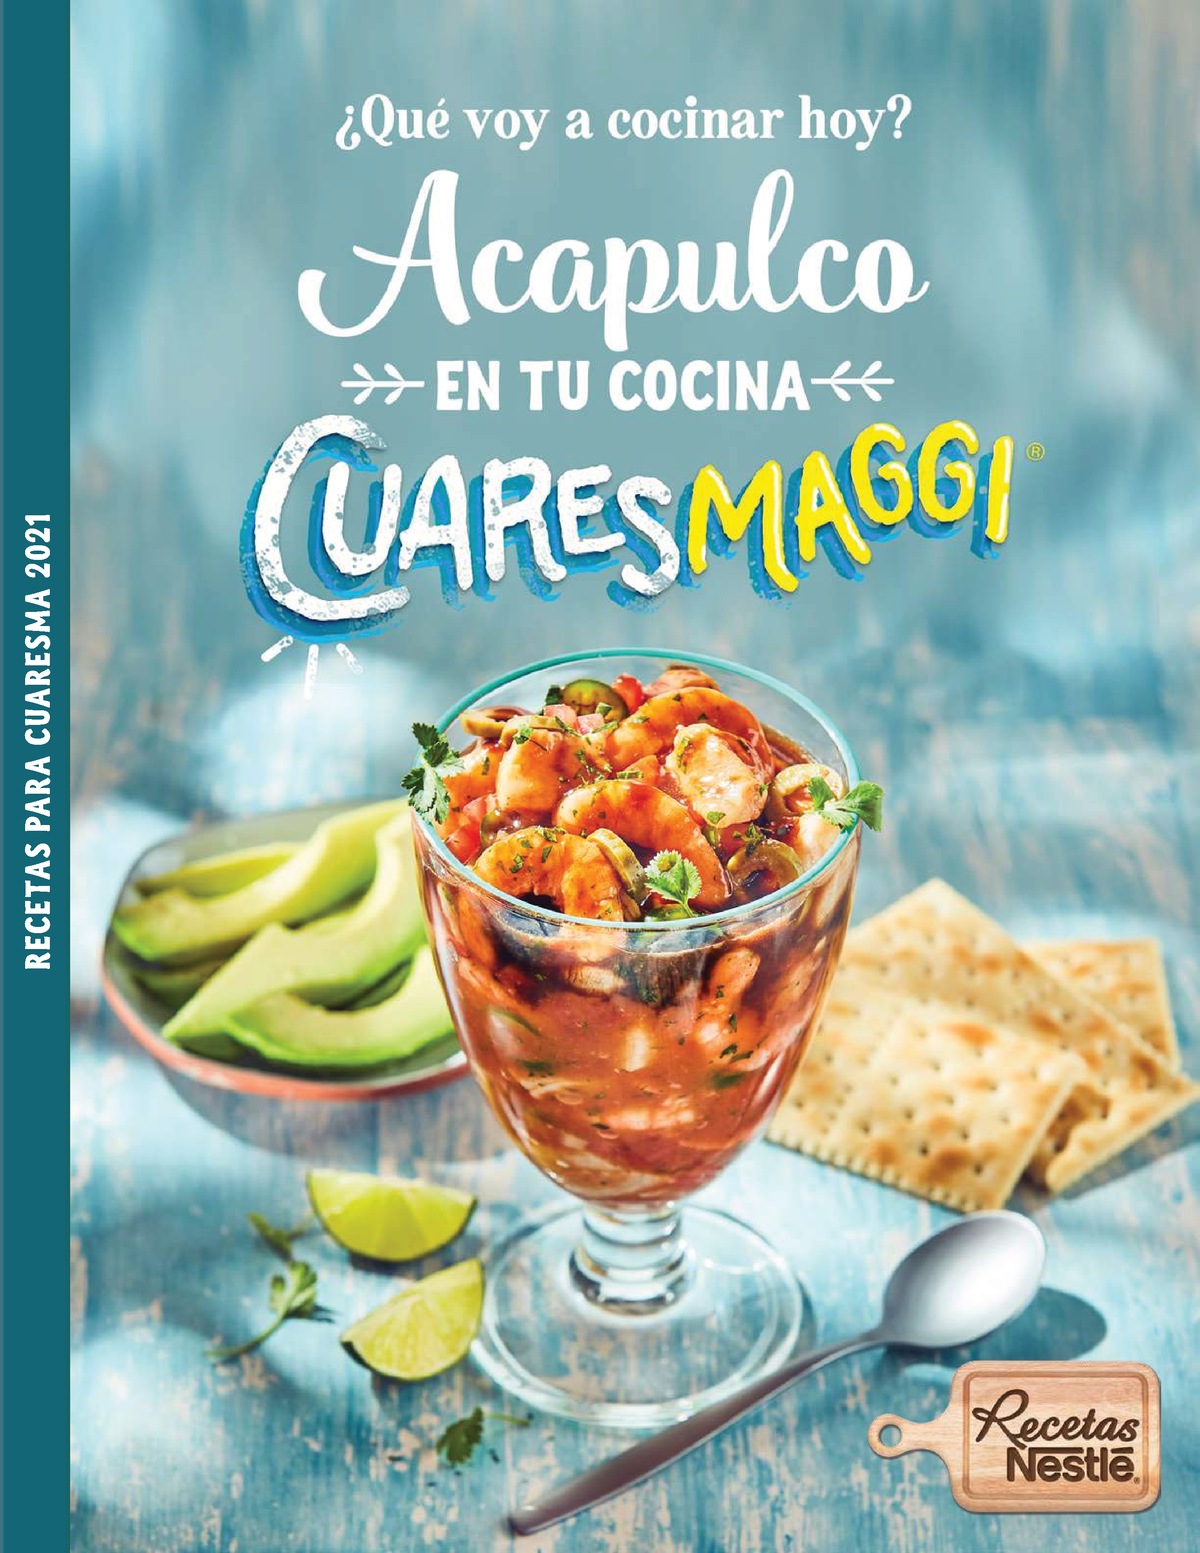 Acapulco-Cuaresmaggi - recetas para cuaresma 500 g de camarón pacotilla 3  limones, su jugo 3 - Studocu